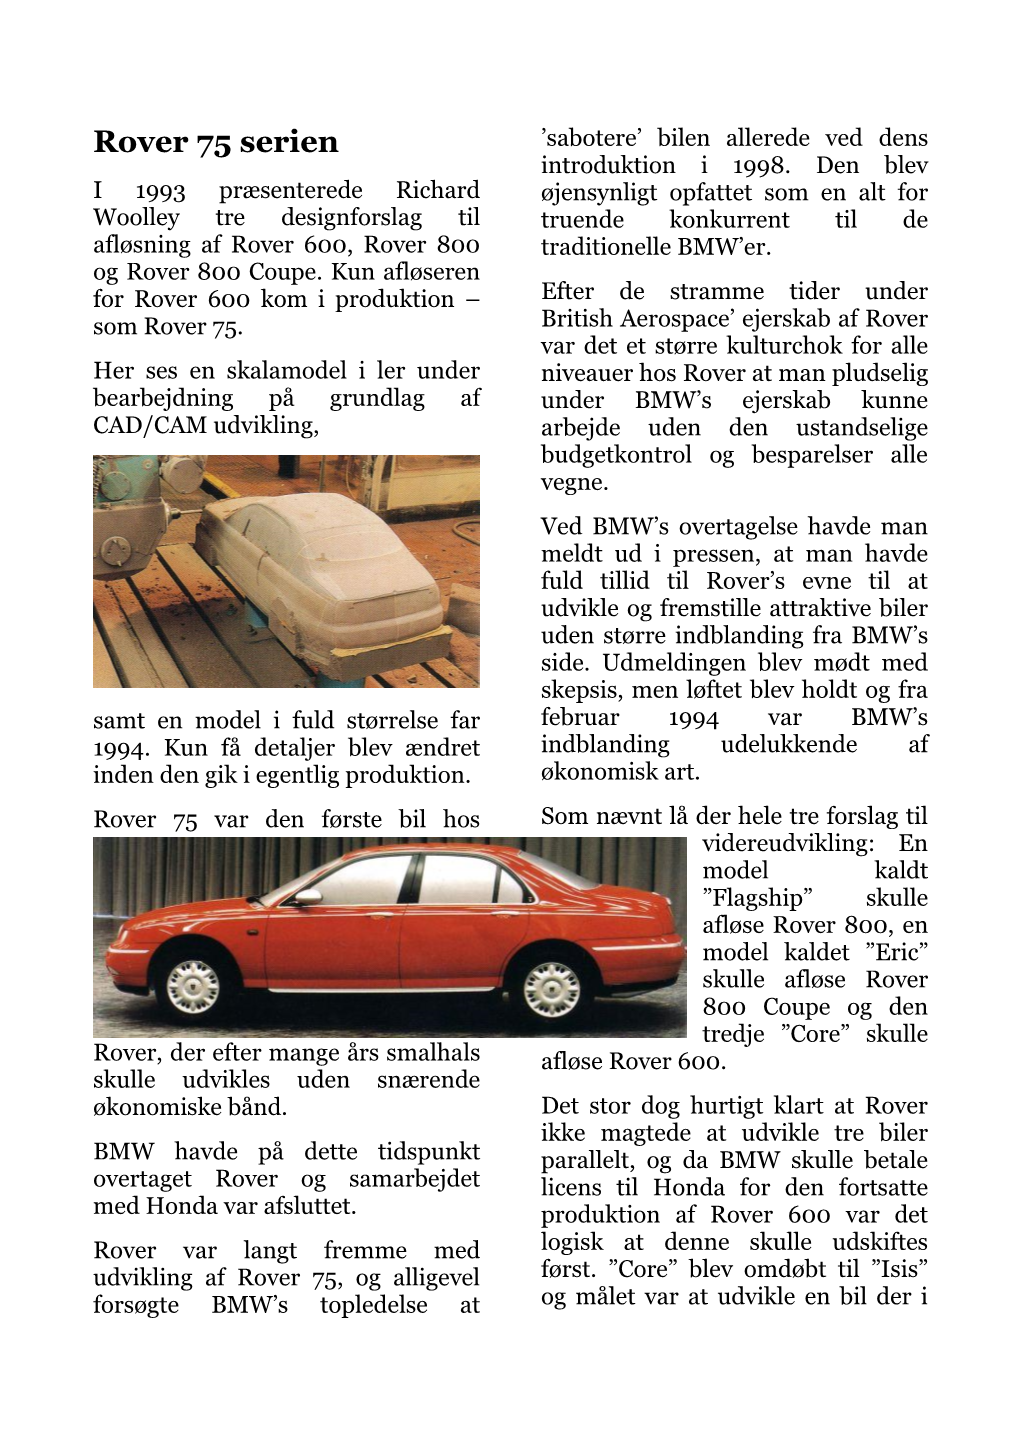 Rover 75 Serien ’Sabotere’ Bilen Allerede Ved Dens Introduktion I 1998